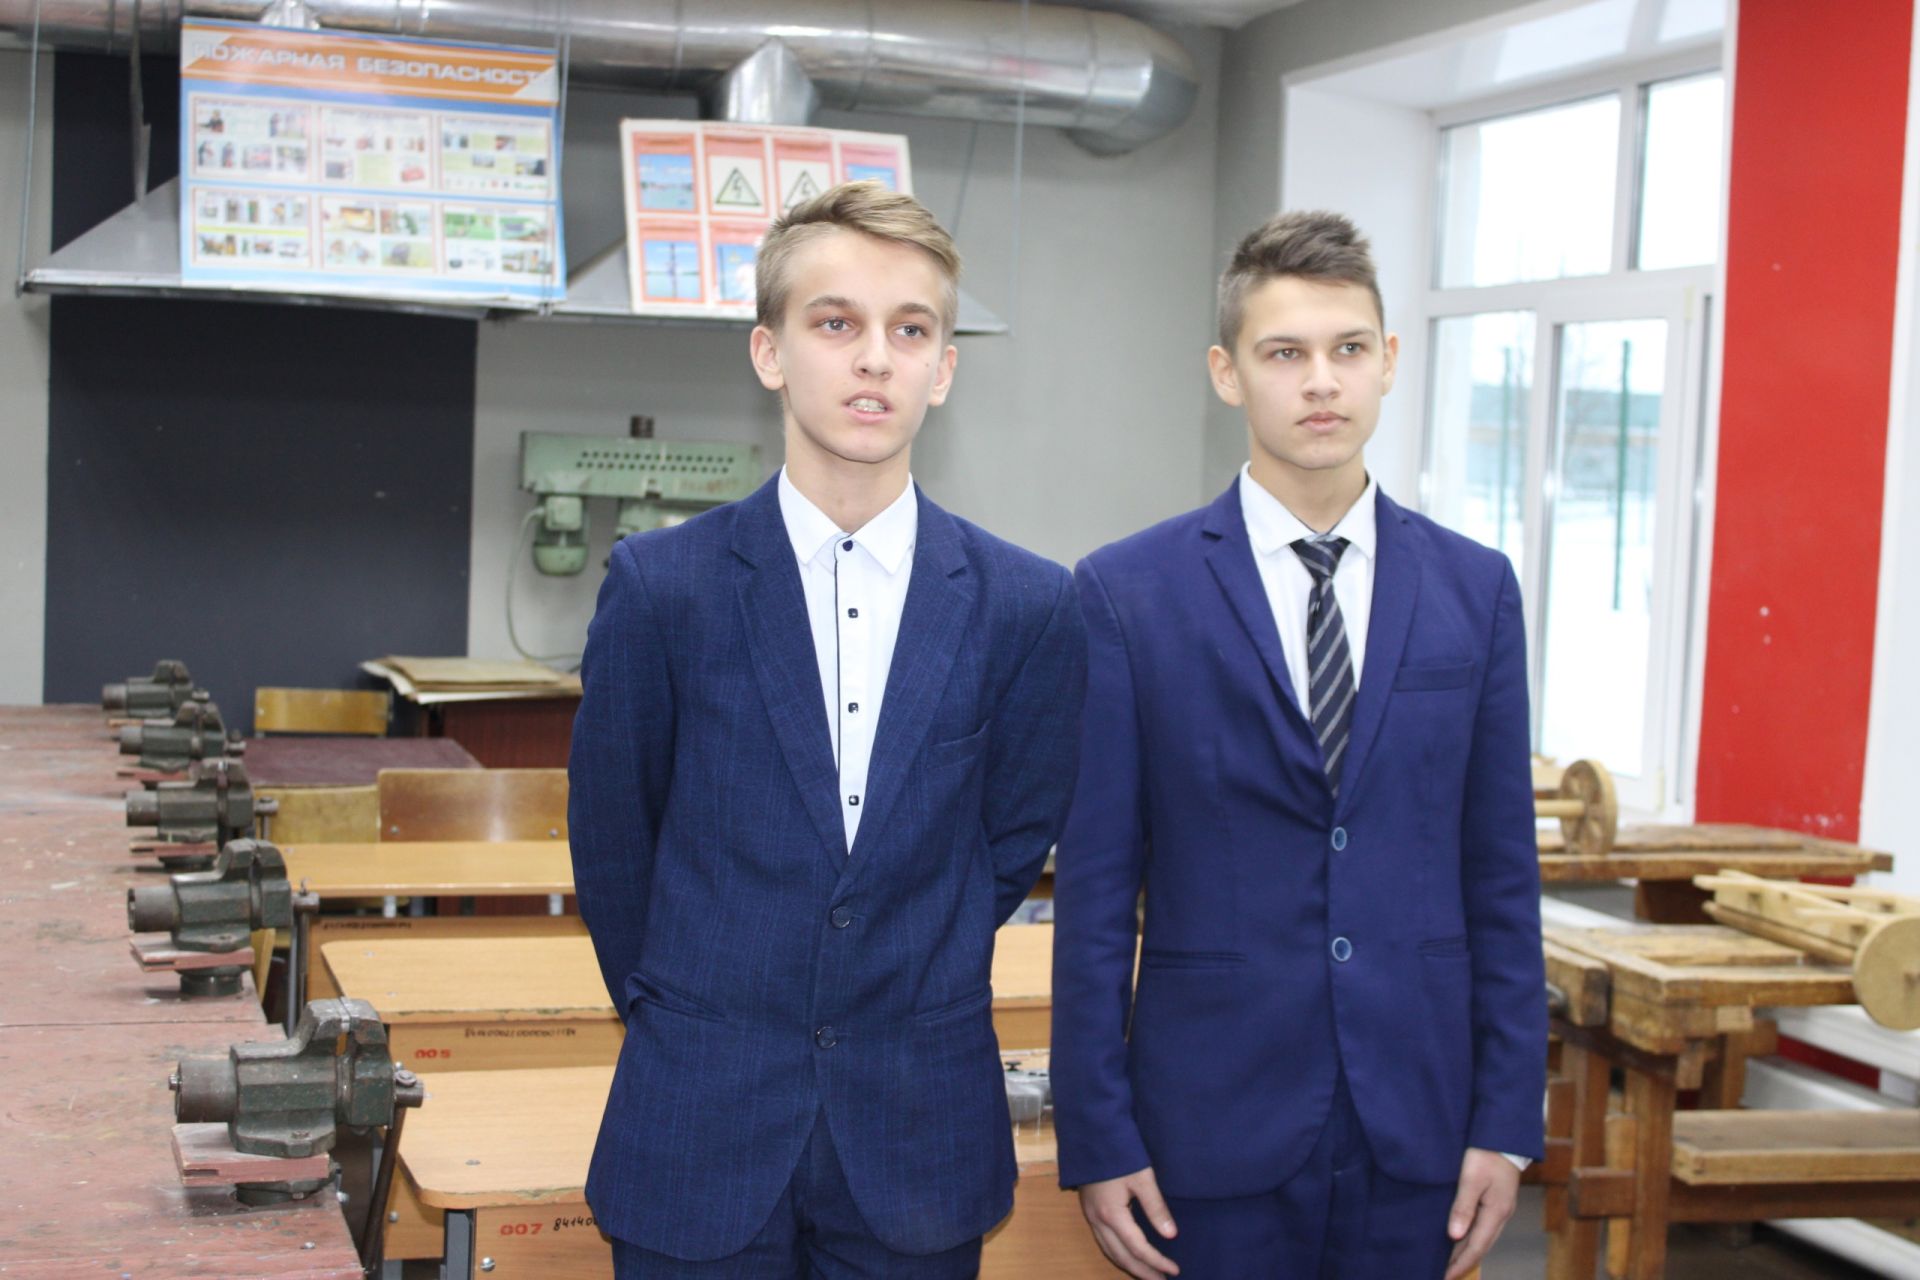 Ученики Кадыровской школы изготавливают и программируют роботов